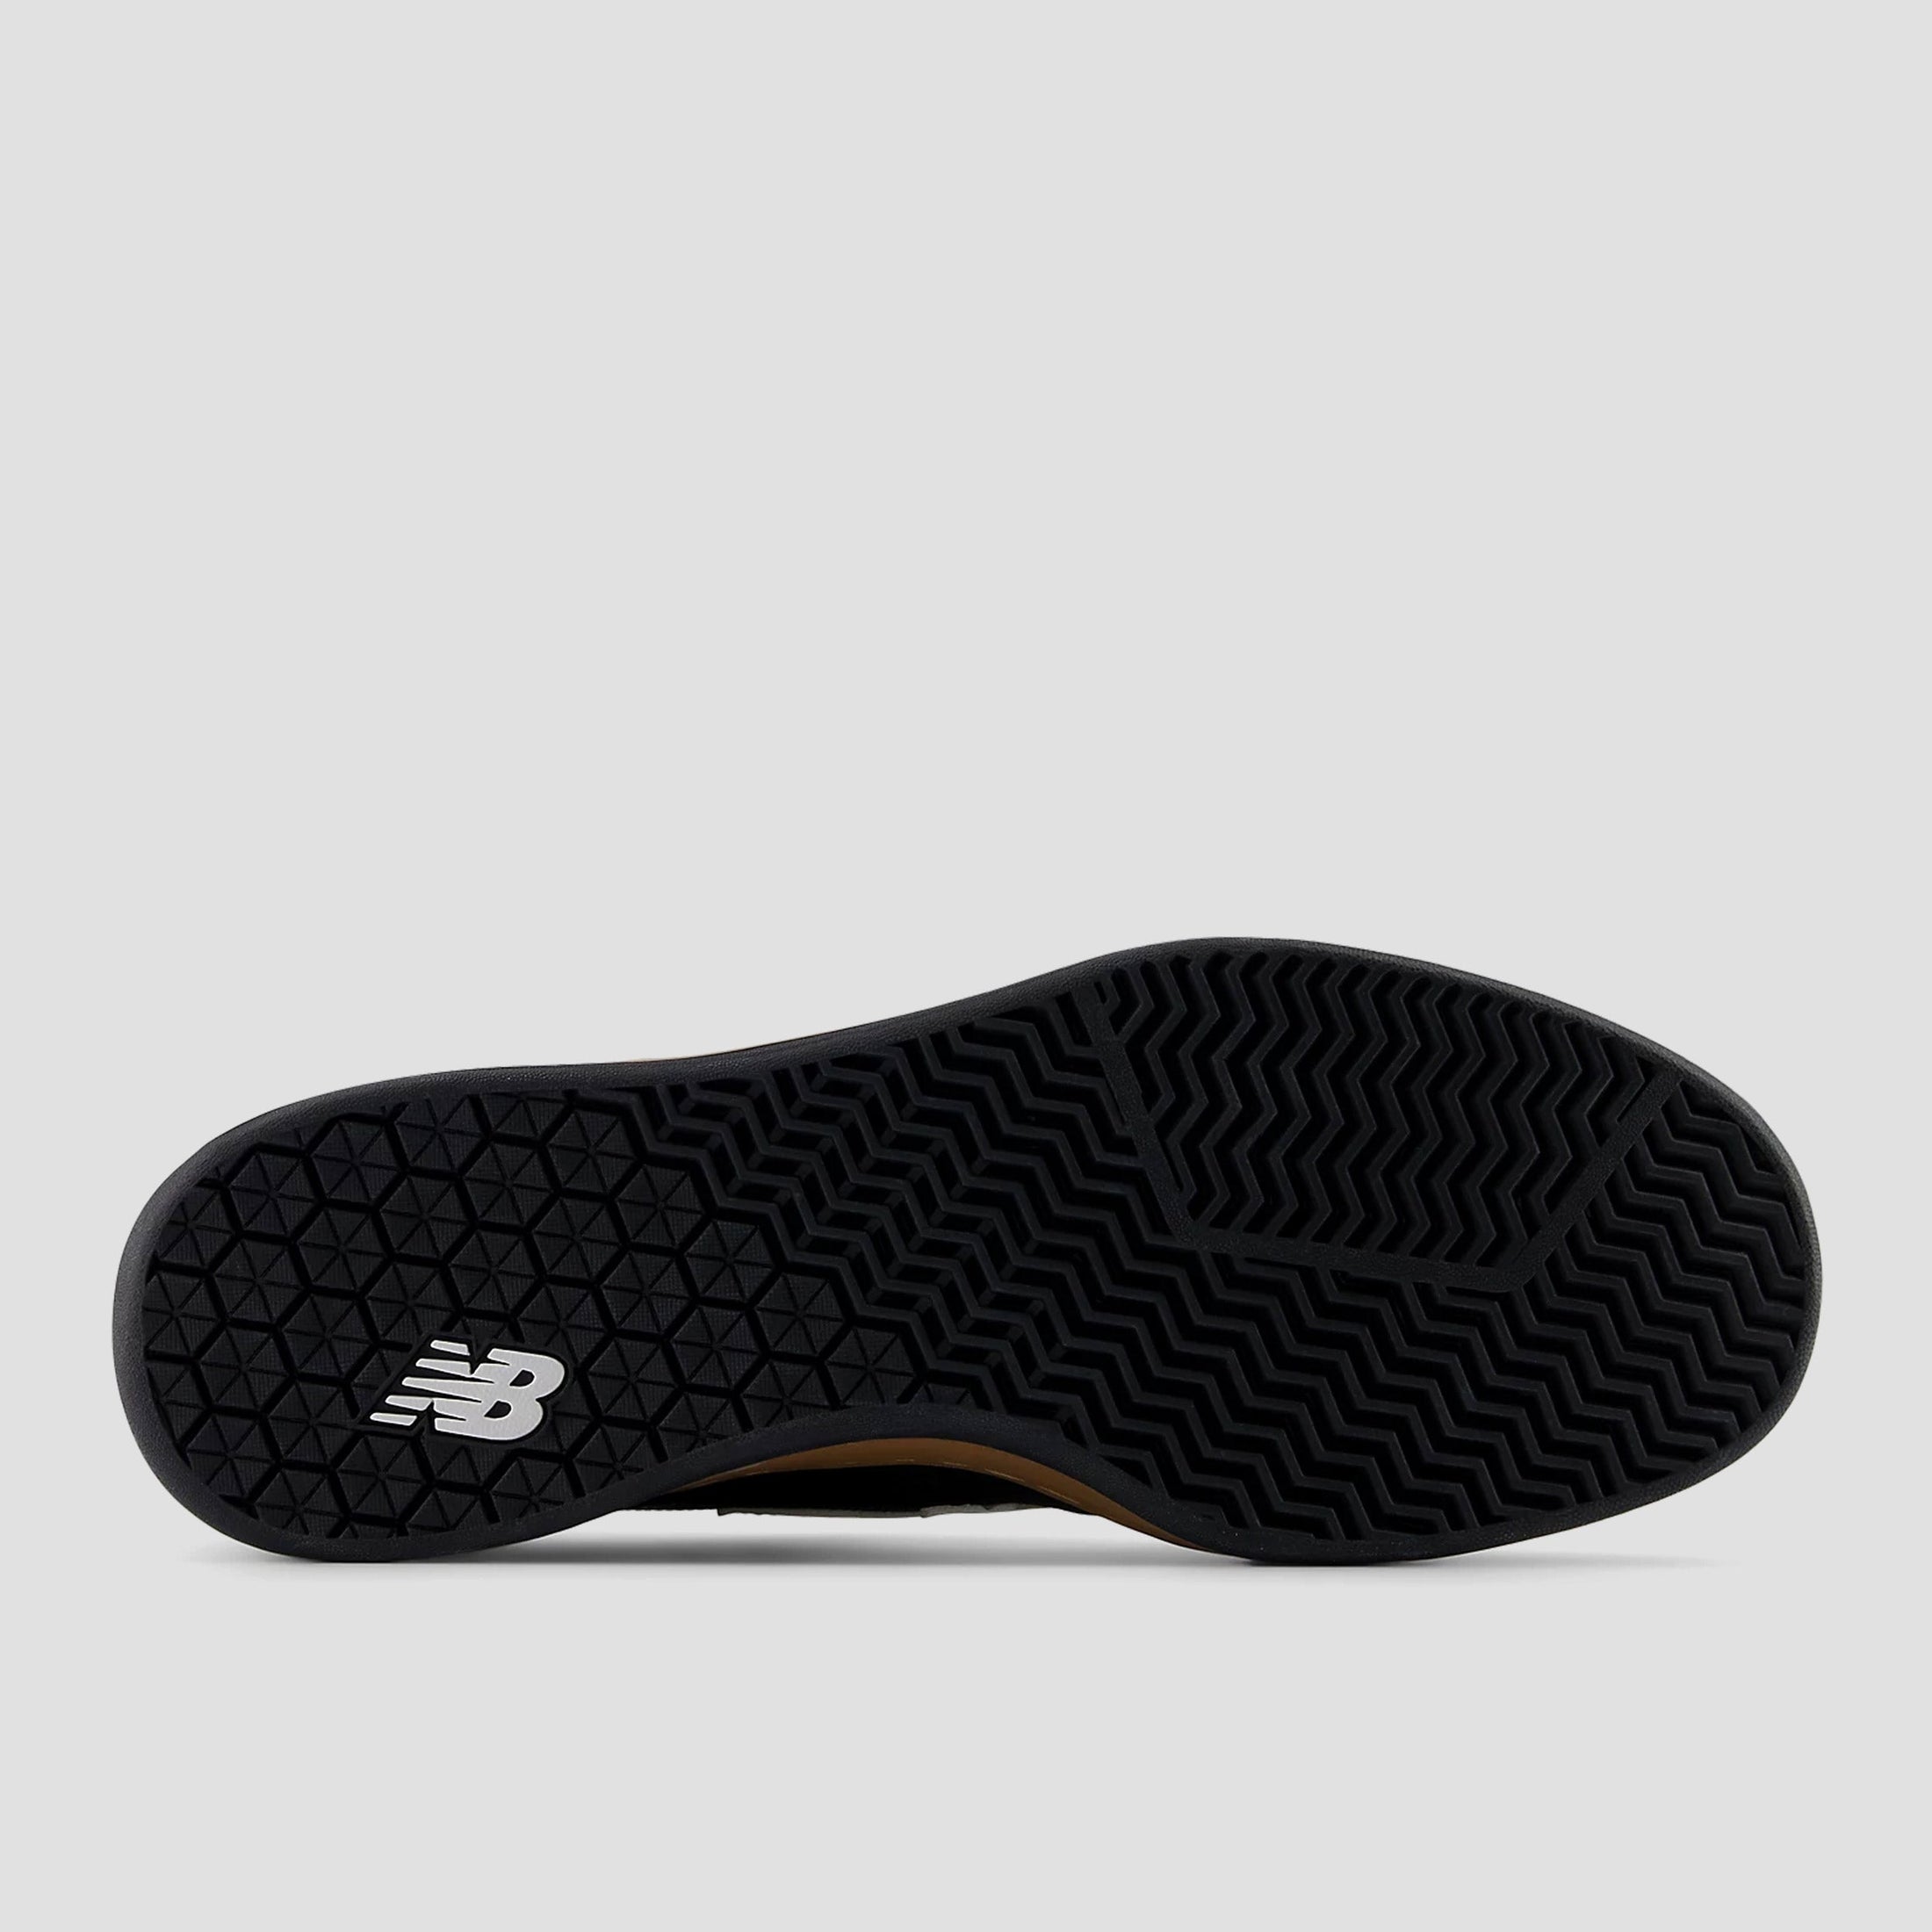 New Balance 440 V2 Skate Shoes Black / White / Gum